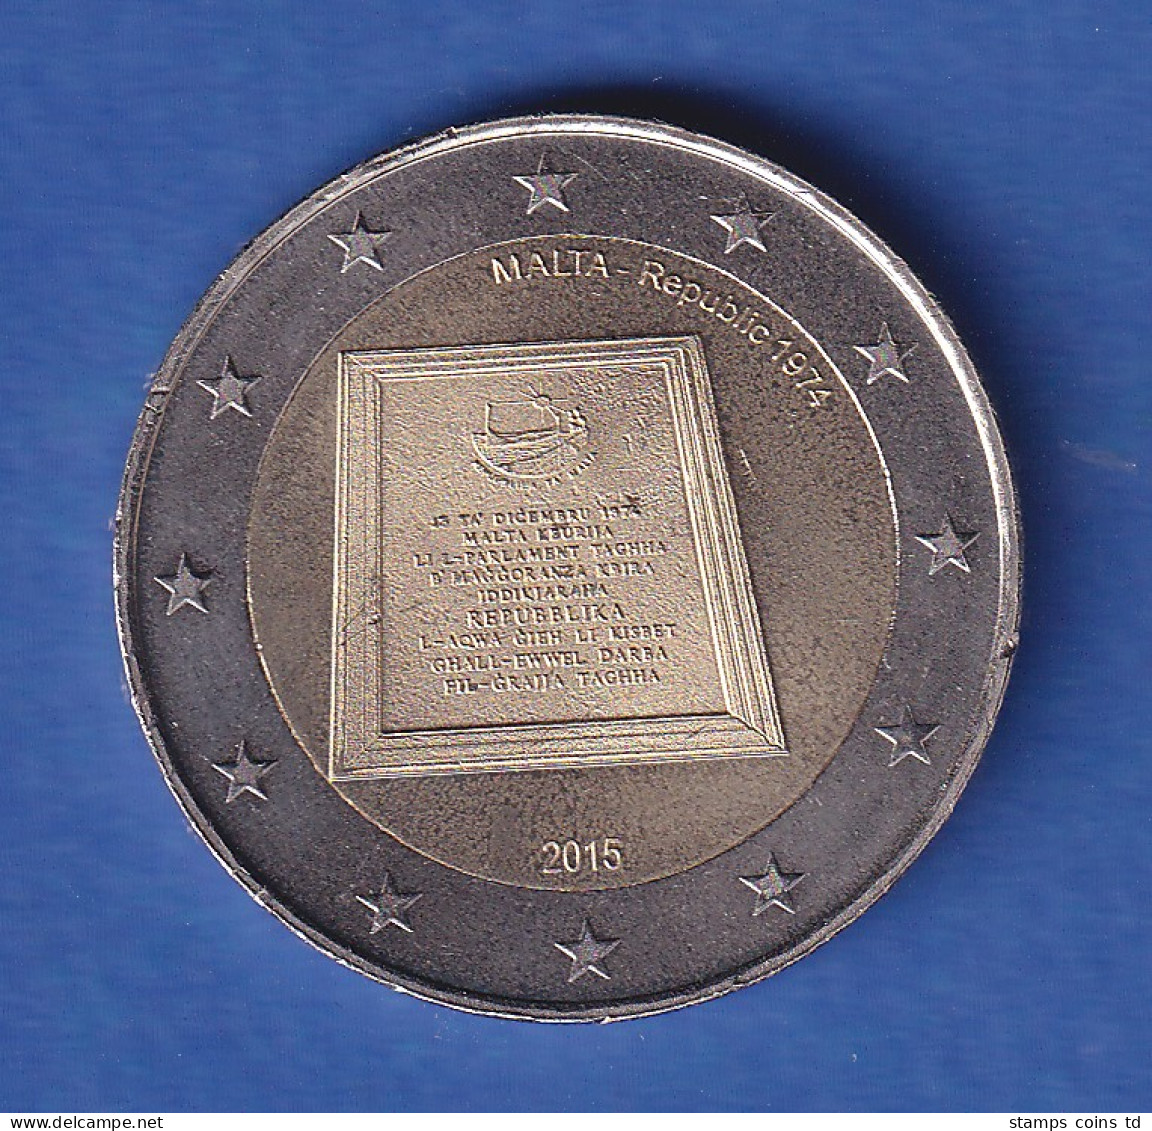 Malta 2015 2-Euro-Sondermünze Gedenktafel Bankfr. Unzirk.  - Malta